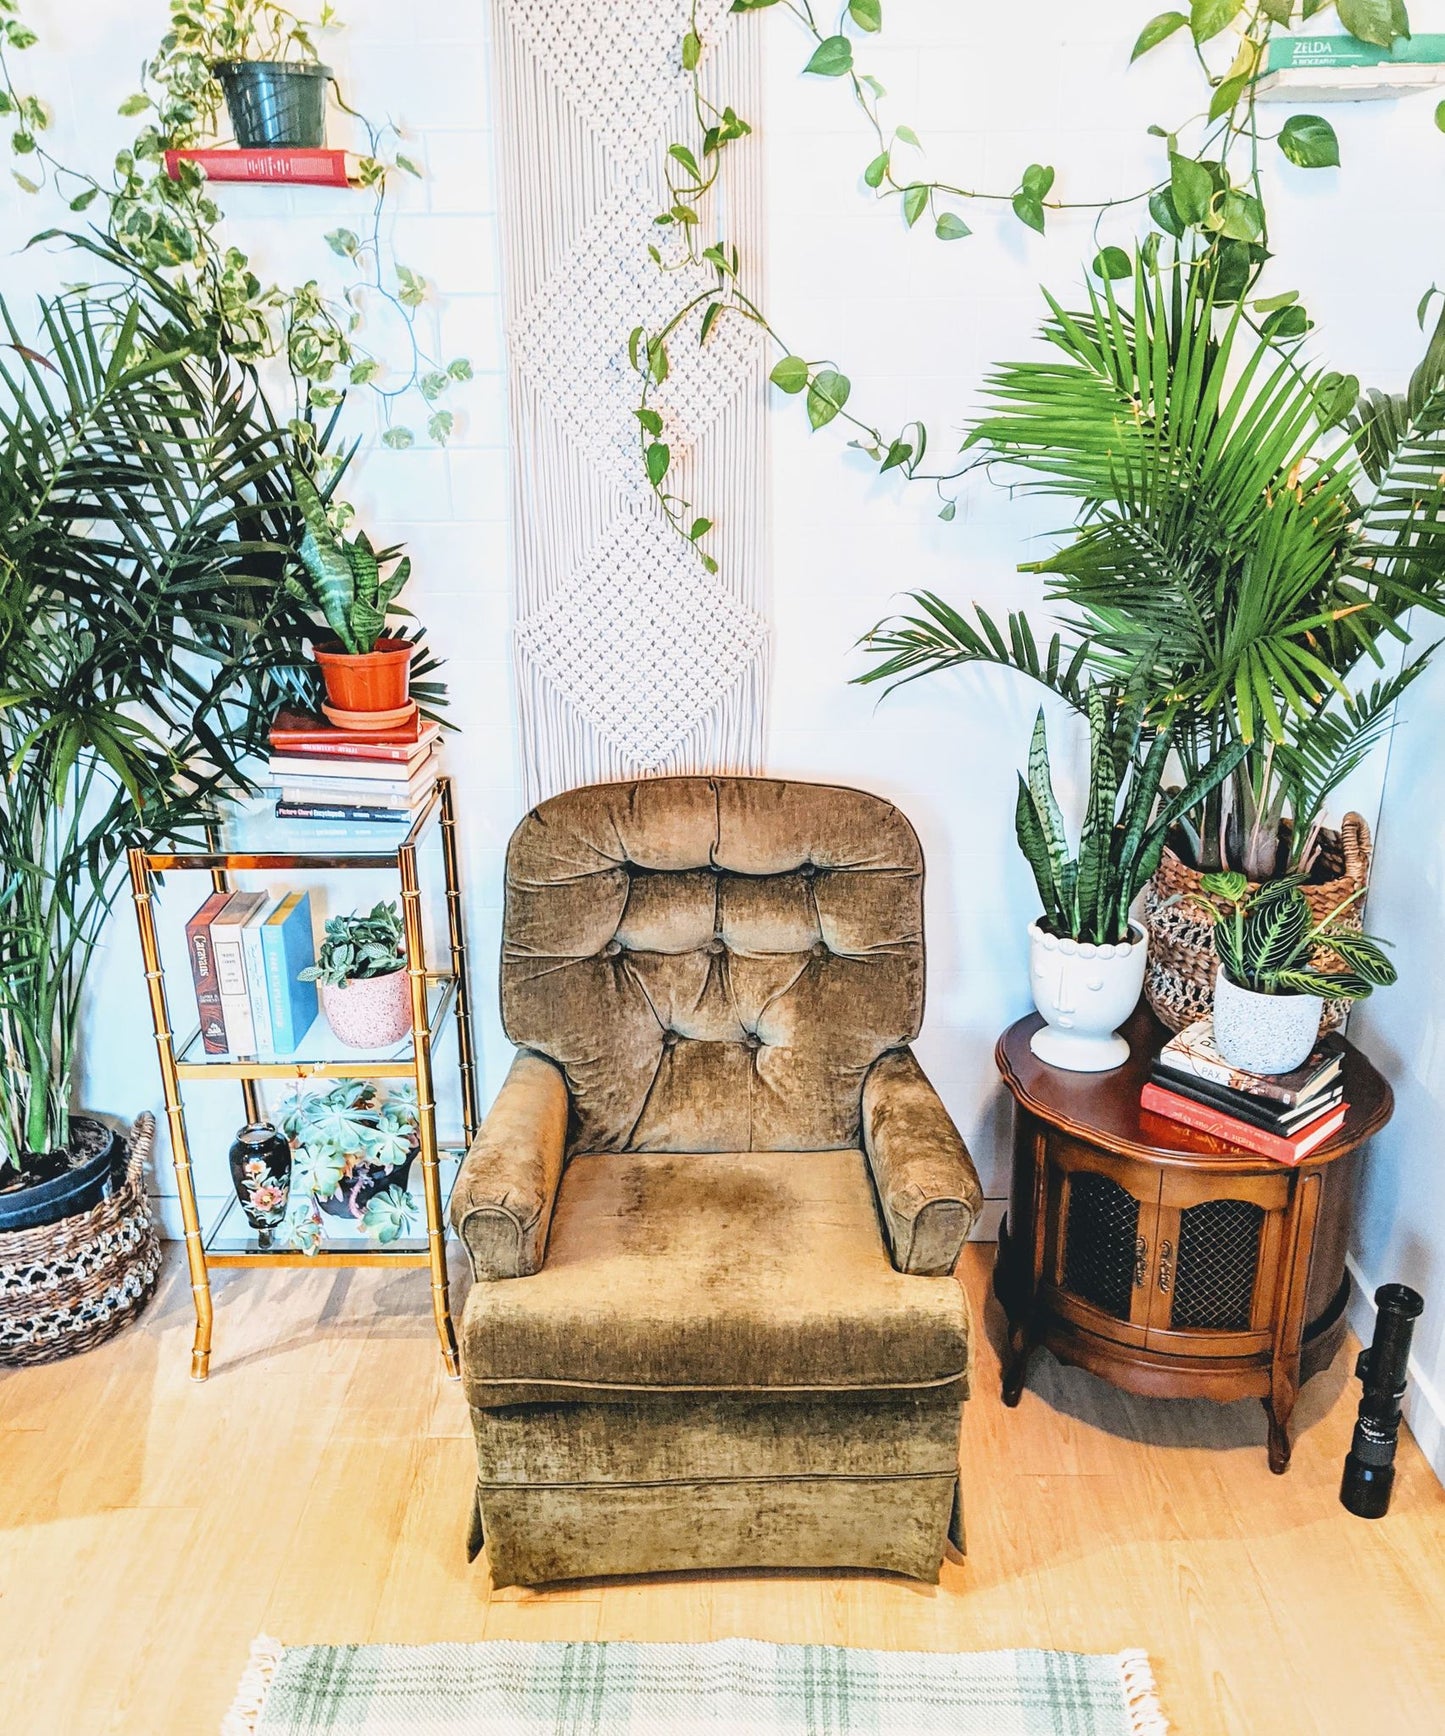 The Green Bean Chair